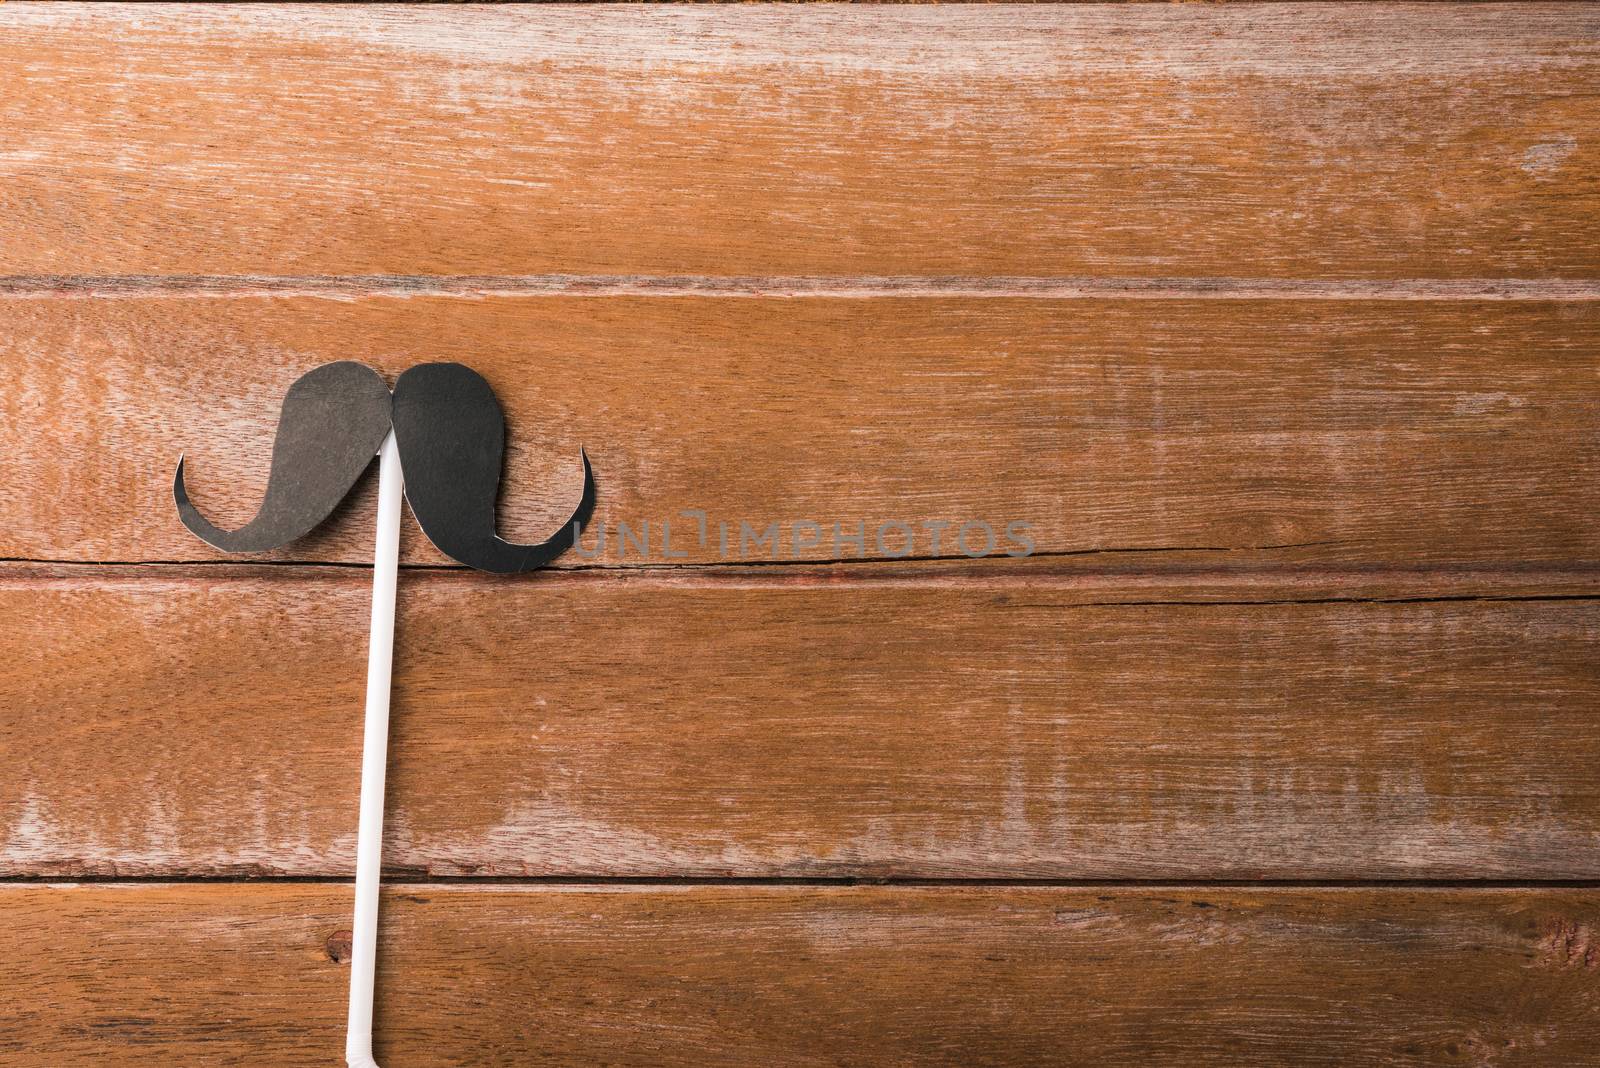 Black mustache paper on wooden by Sorapop